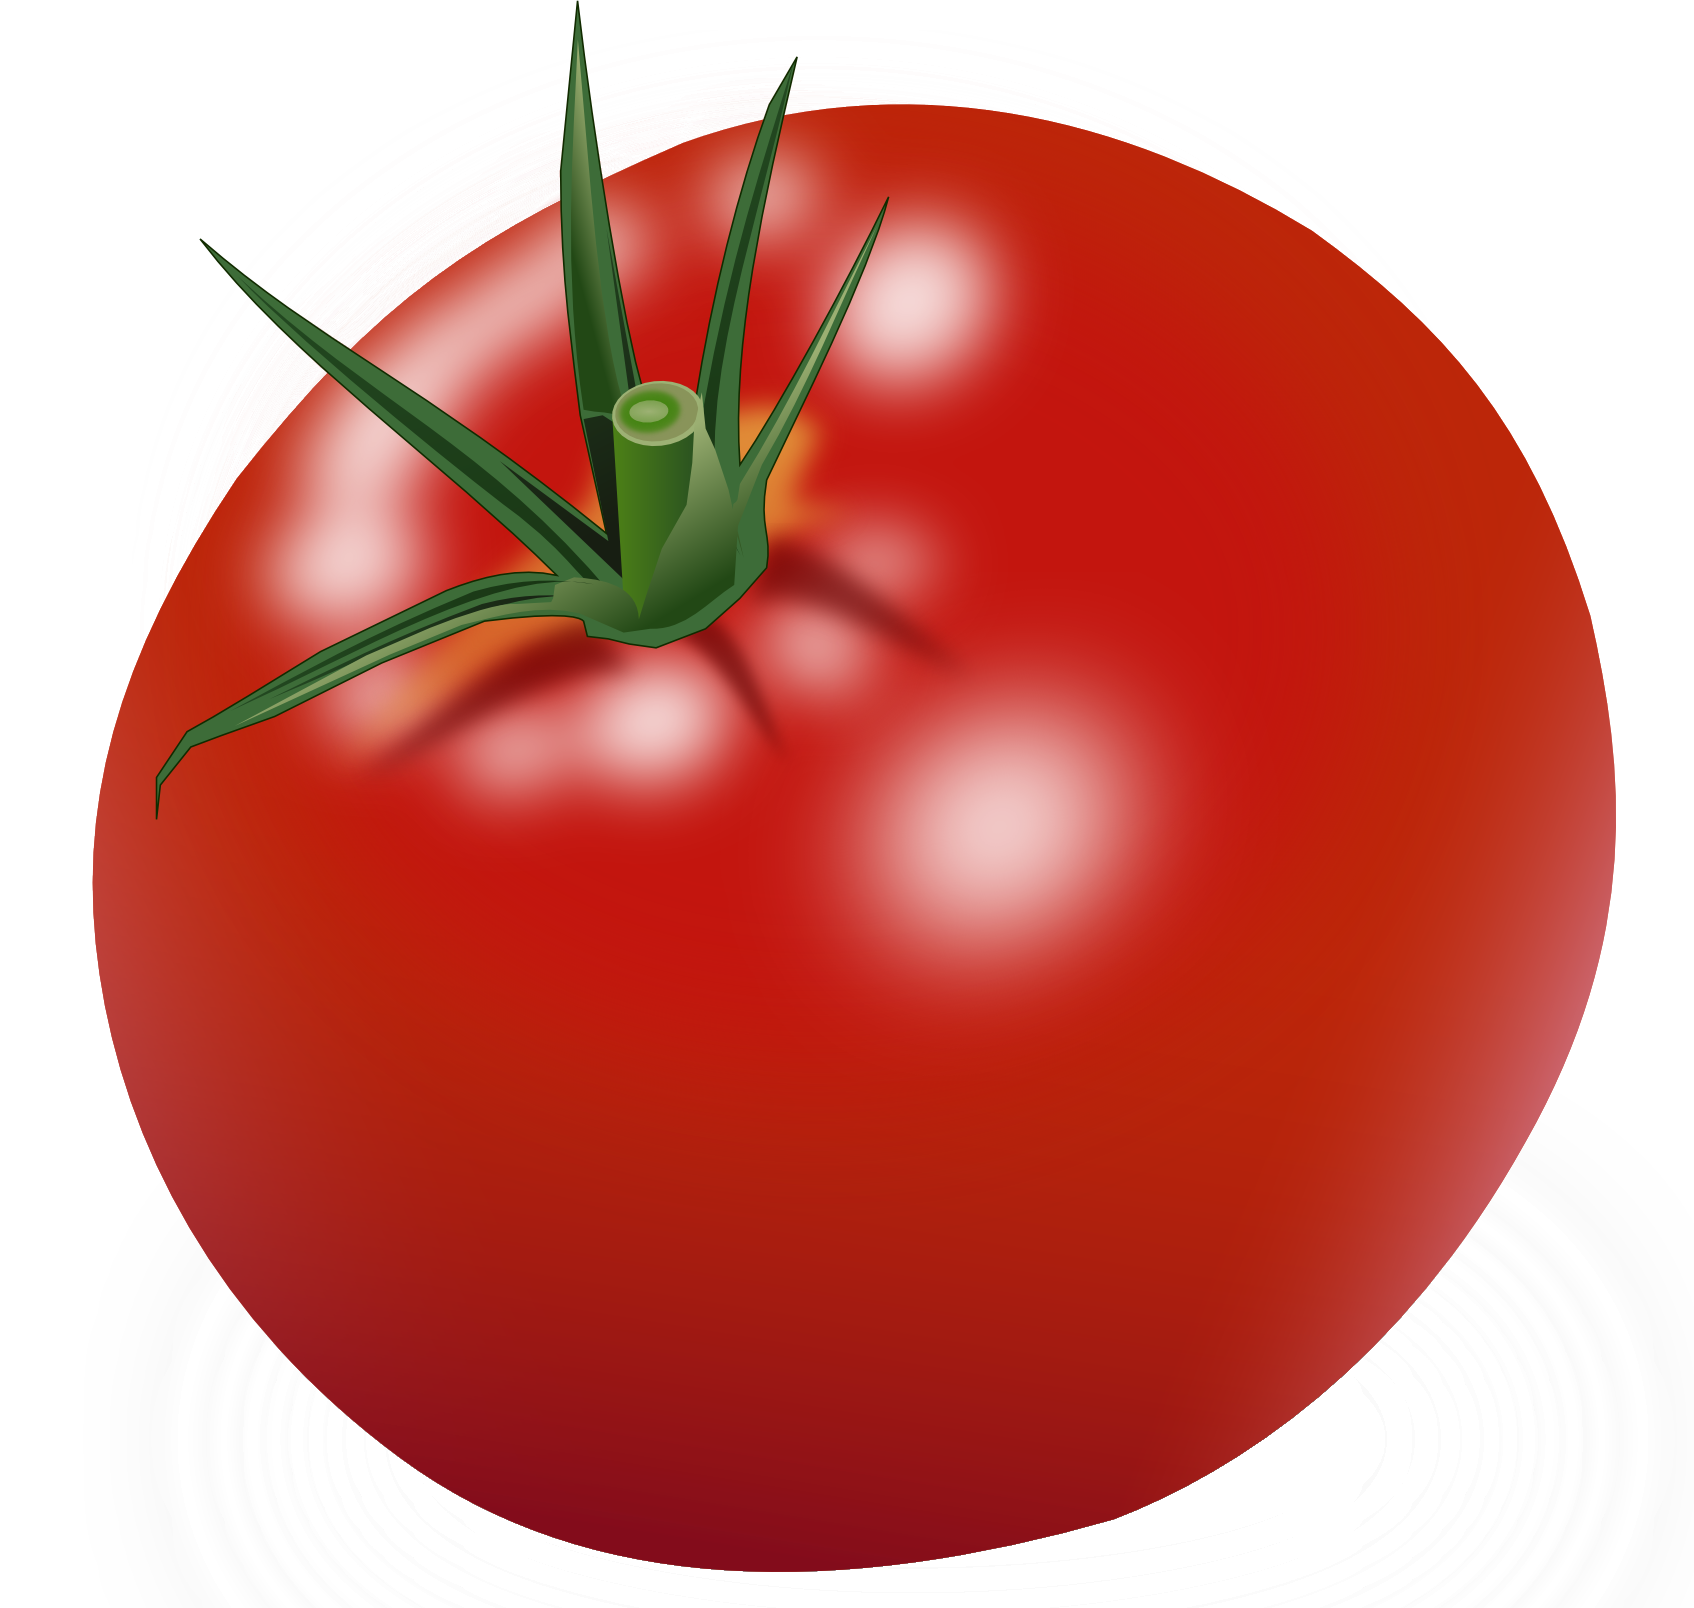 Duży czerwony pomidor